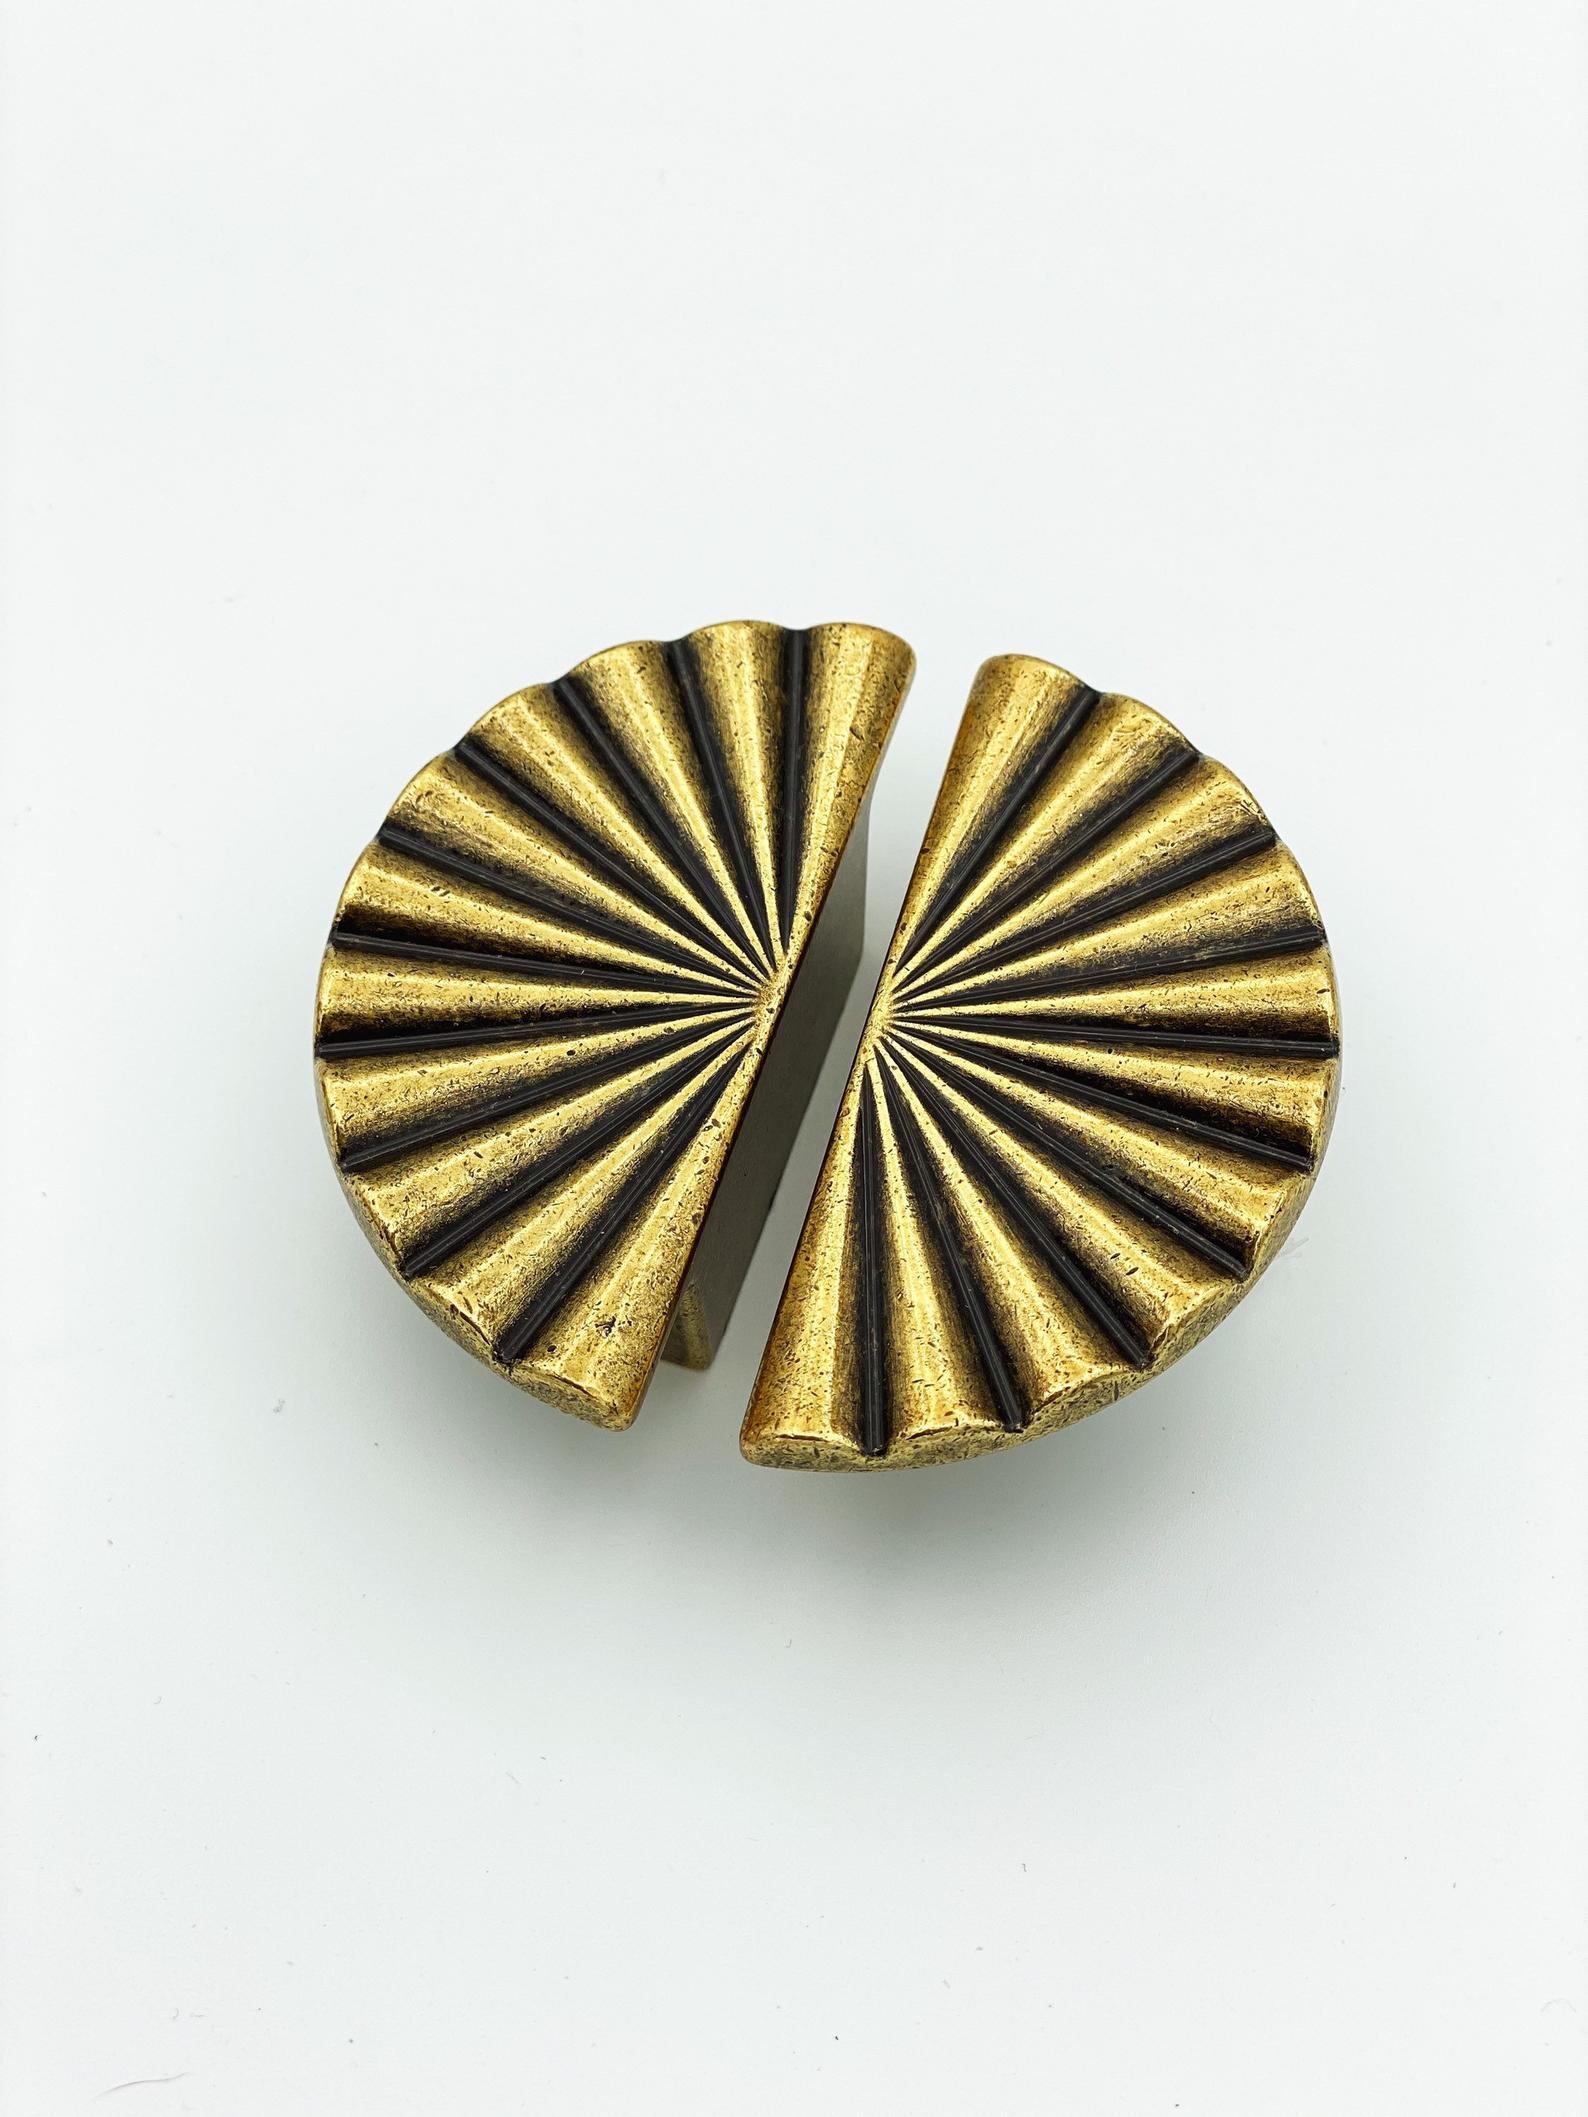 Reeded Antique Brass "Half-Daisy" Round Cabinet Knob | Pulls